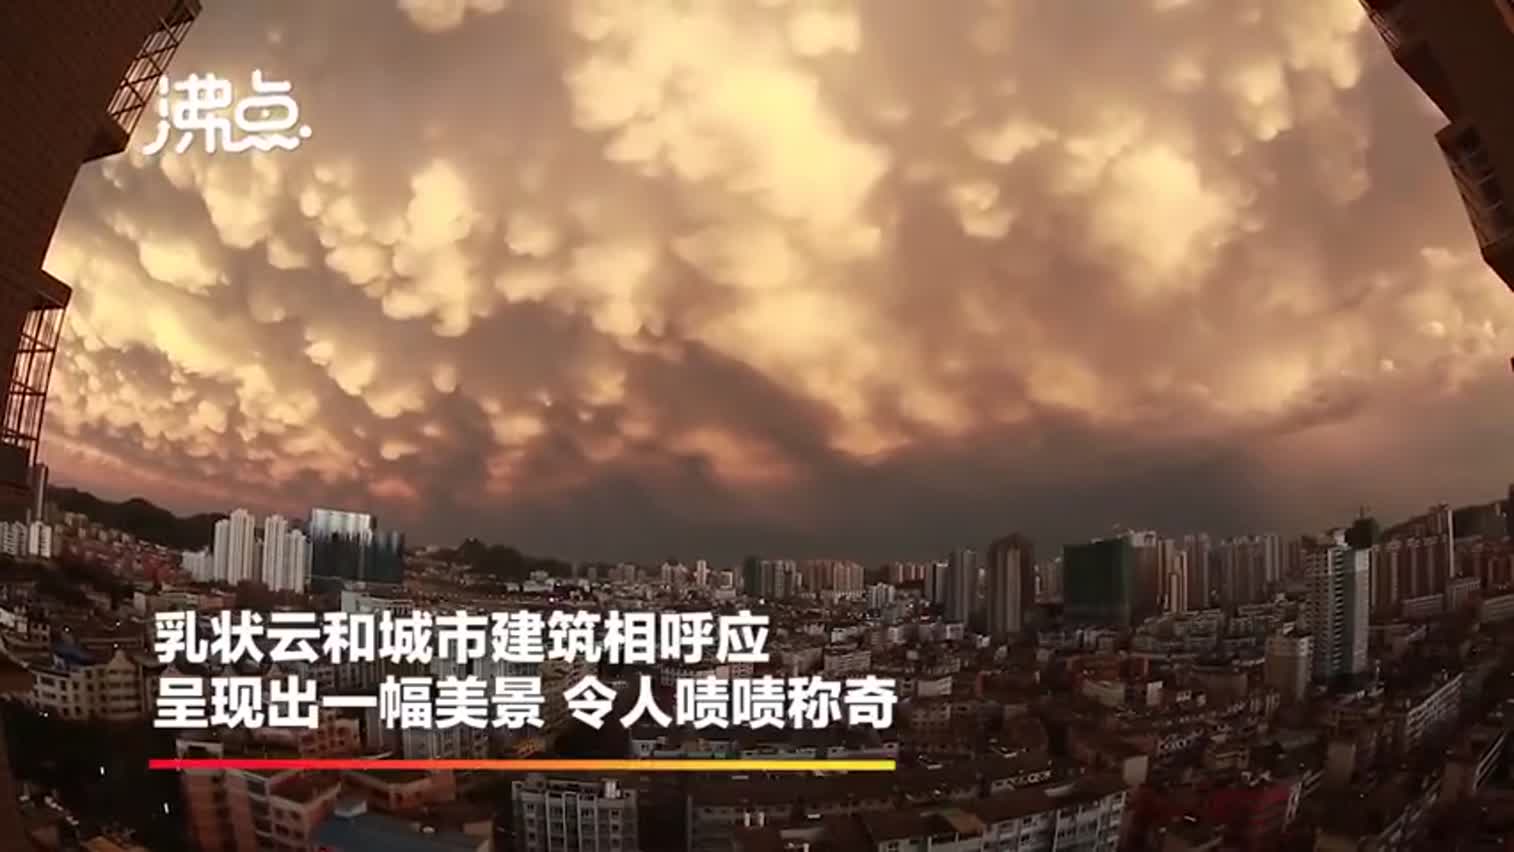 视频|贵州乳状云奇观 美景令人称奇